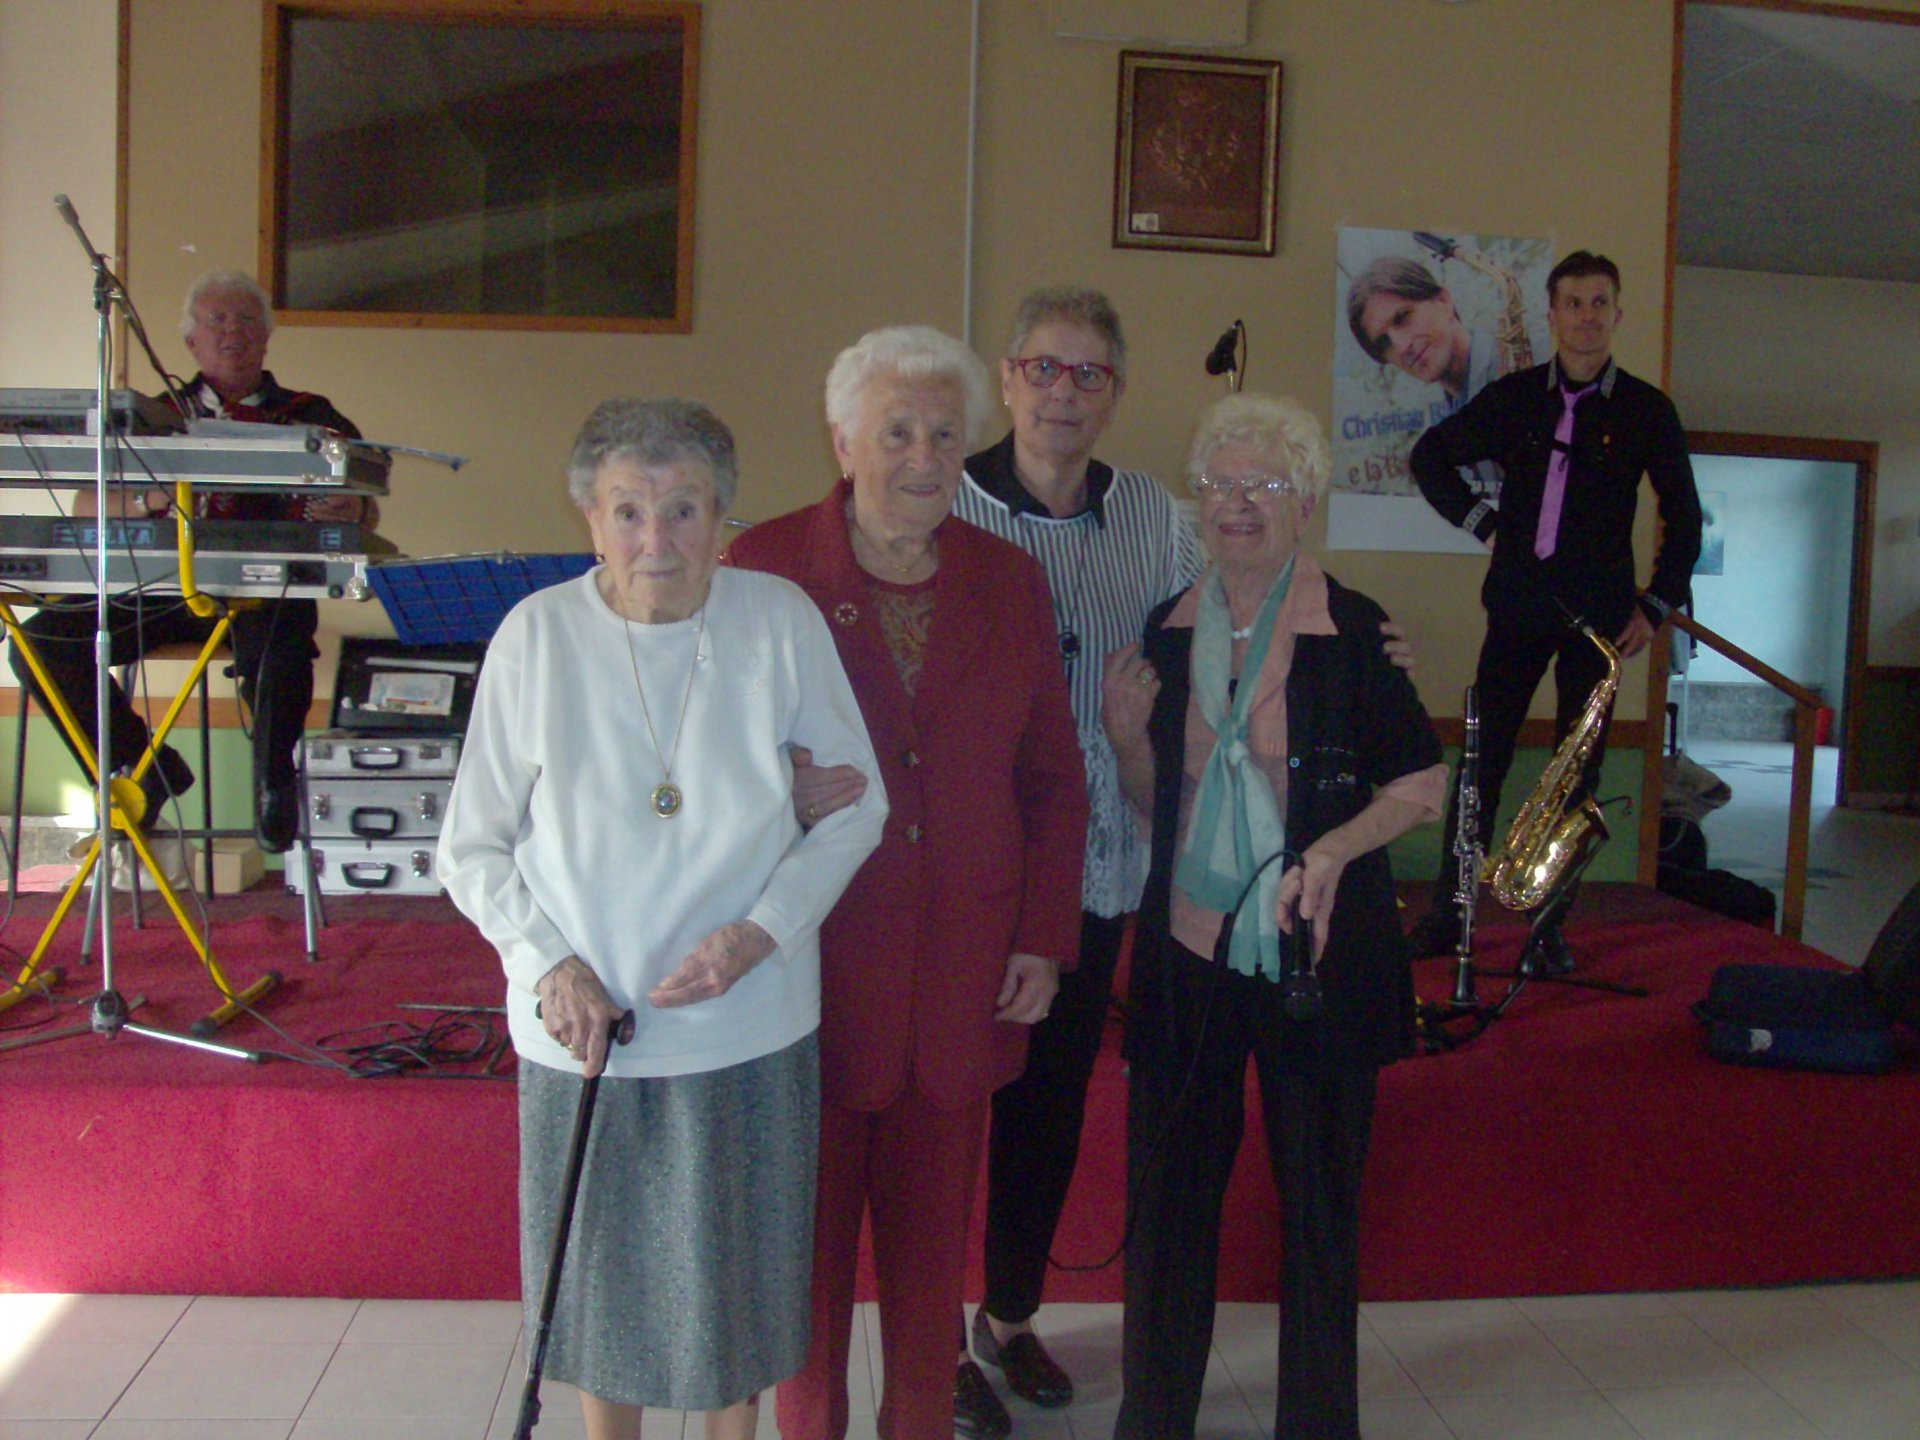 Festa dei nonni S.Giusto 2018, gruppo con centenaria